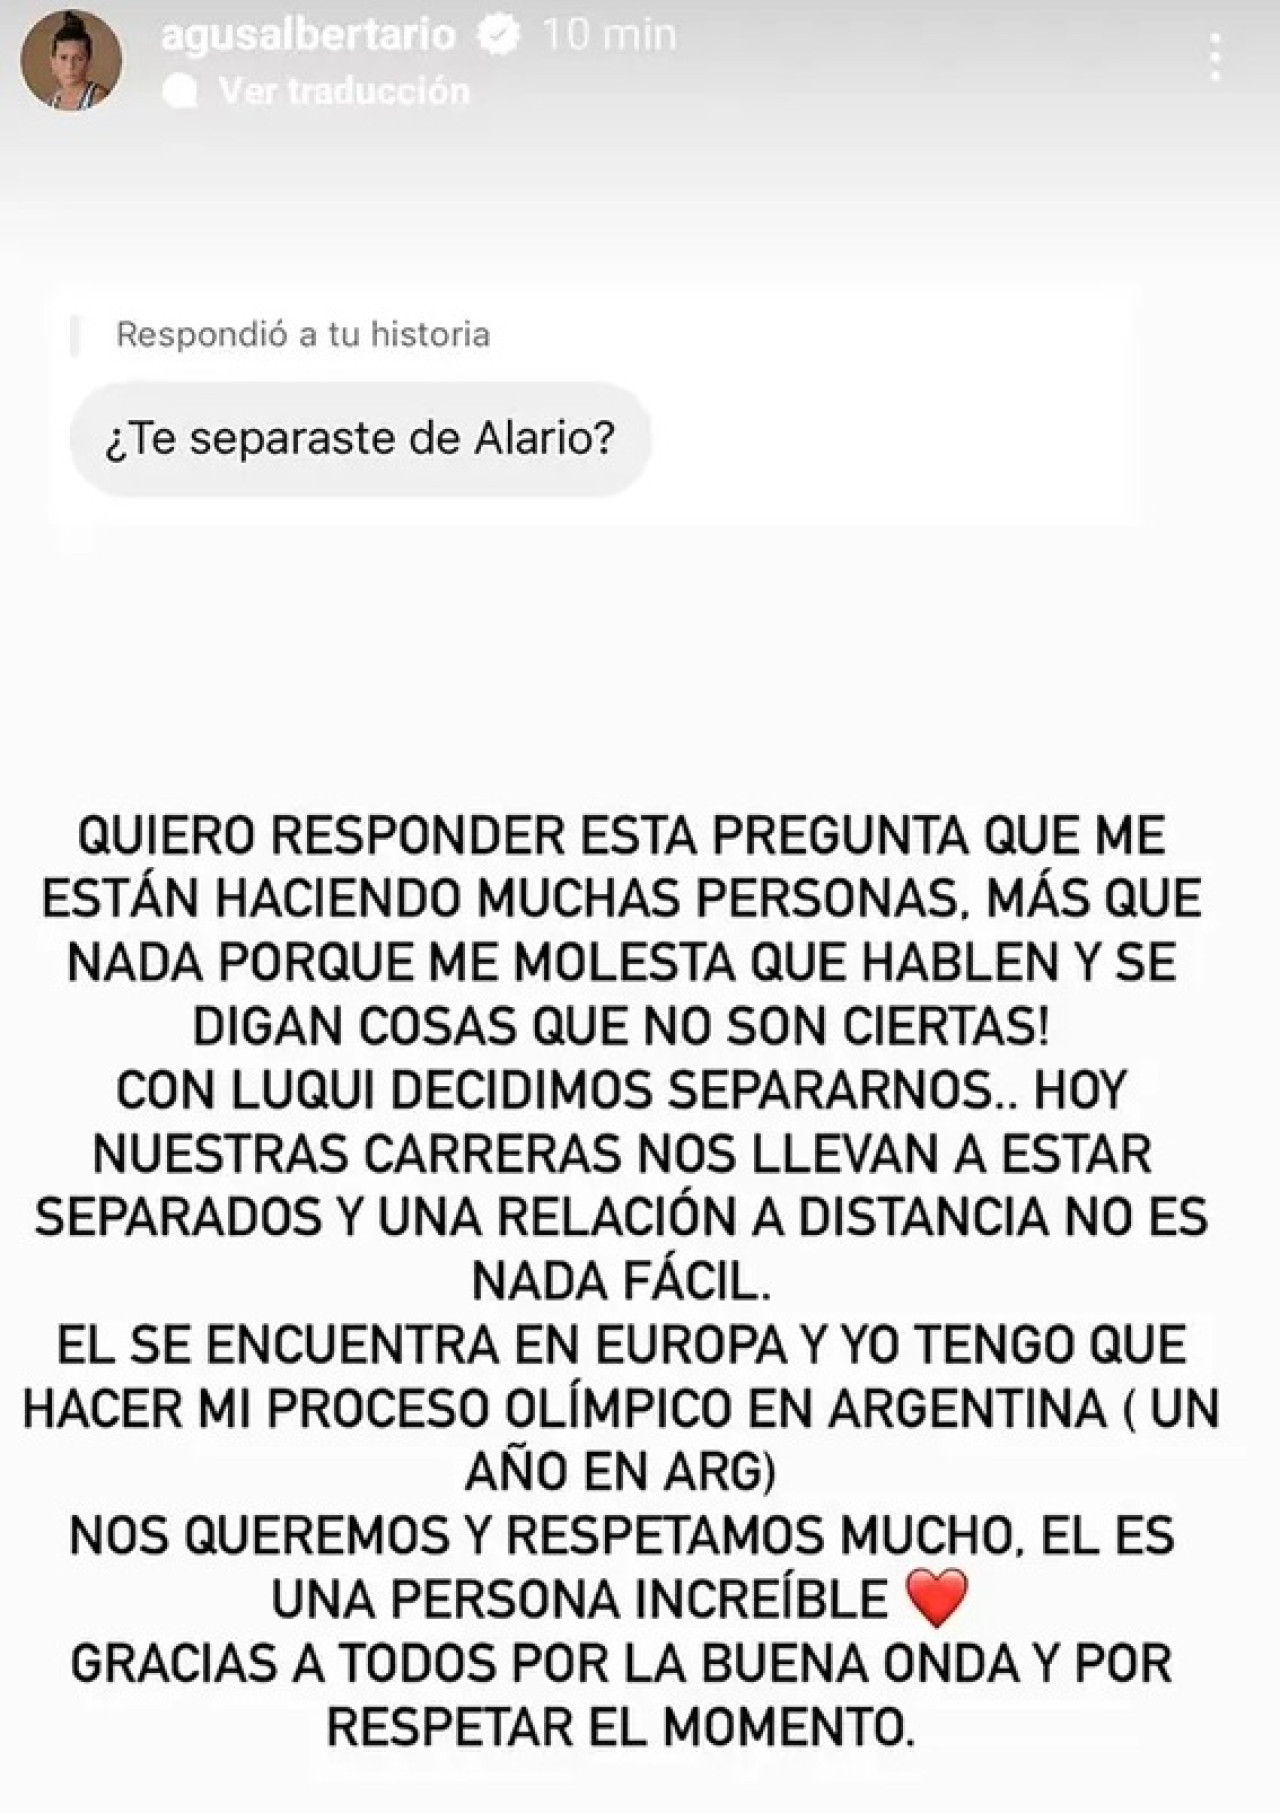 Mensaje de Agustina Albertario sobre su separación de Lucas Alario. Foto: @agusalbertario.